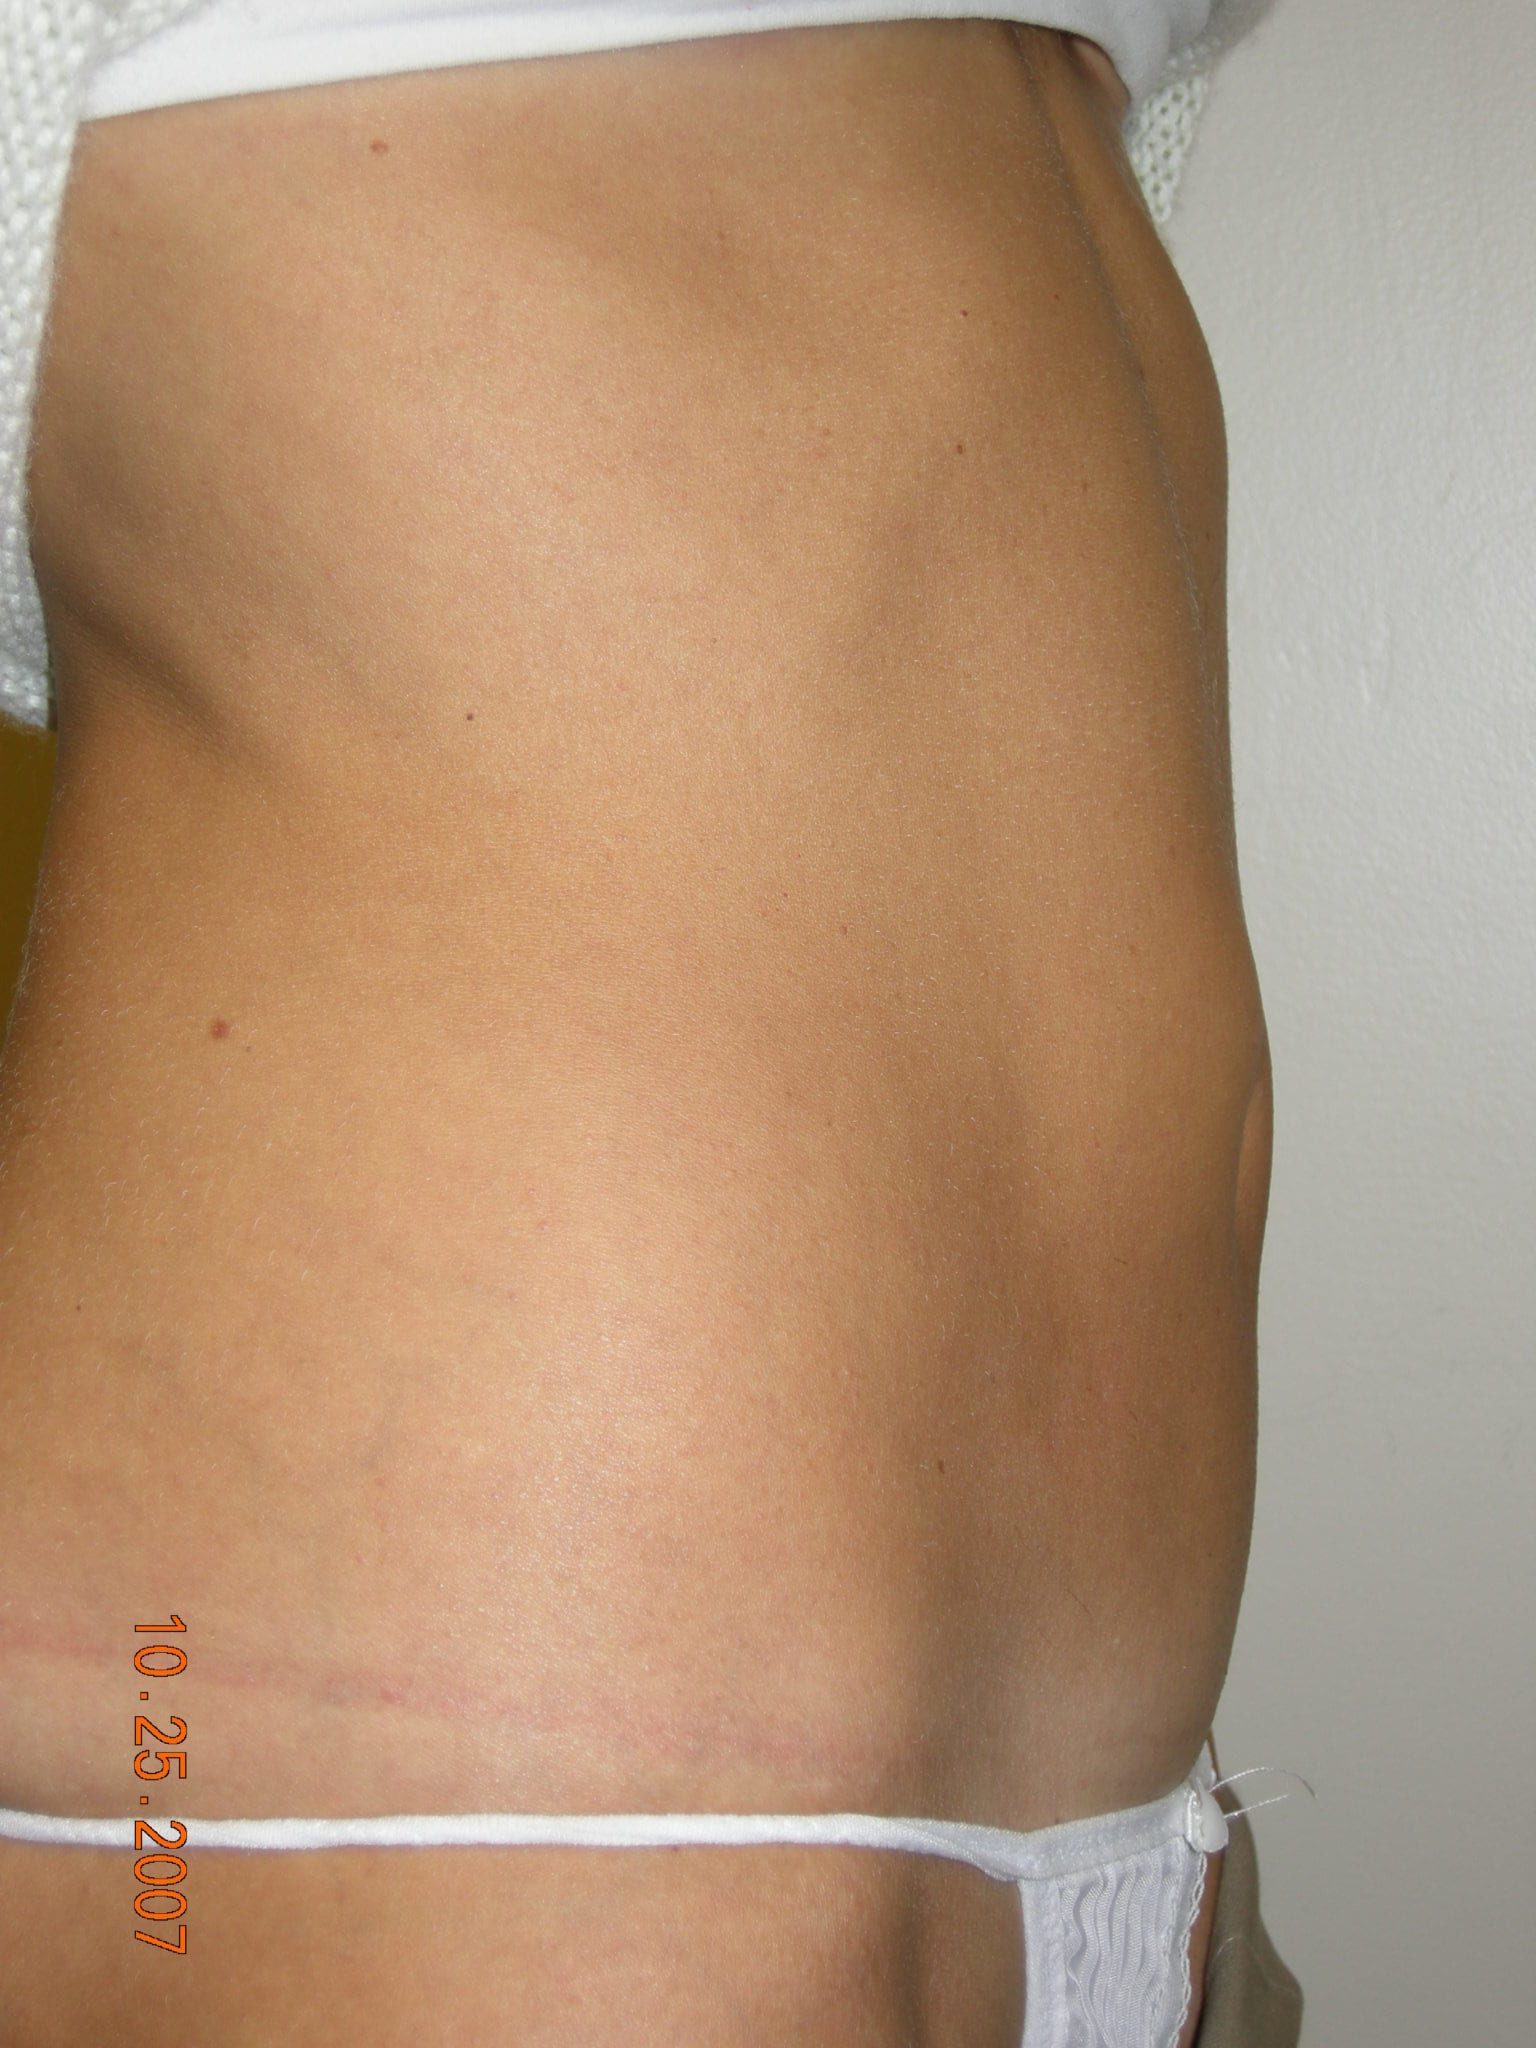 Liposuction Patient Photo - Case 3277 - after view-3